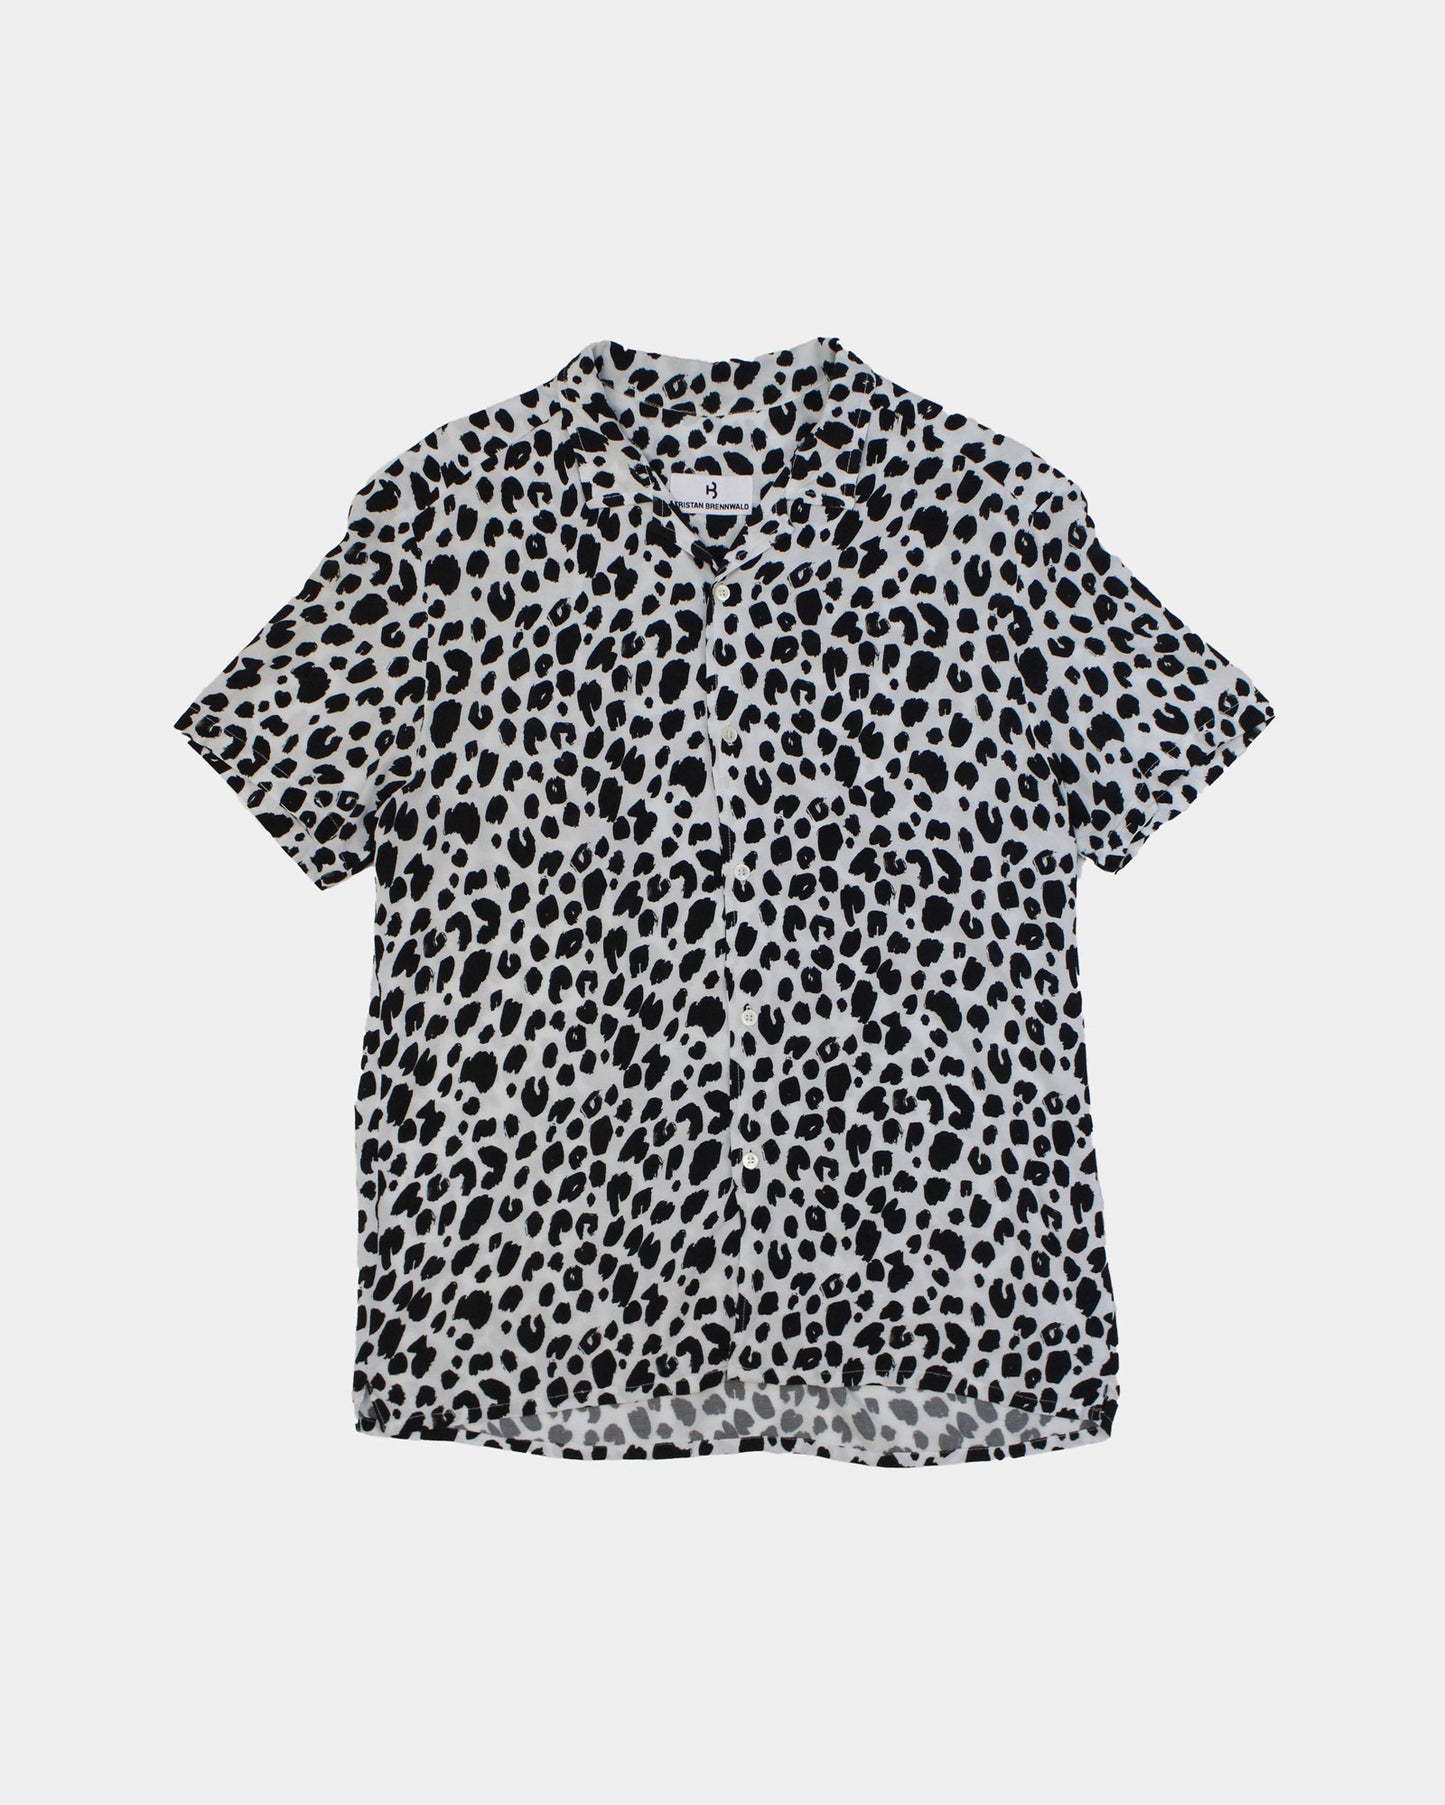 Cuban Shirt Leopard